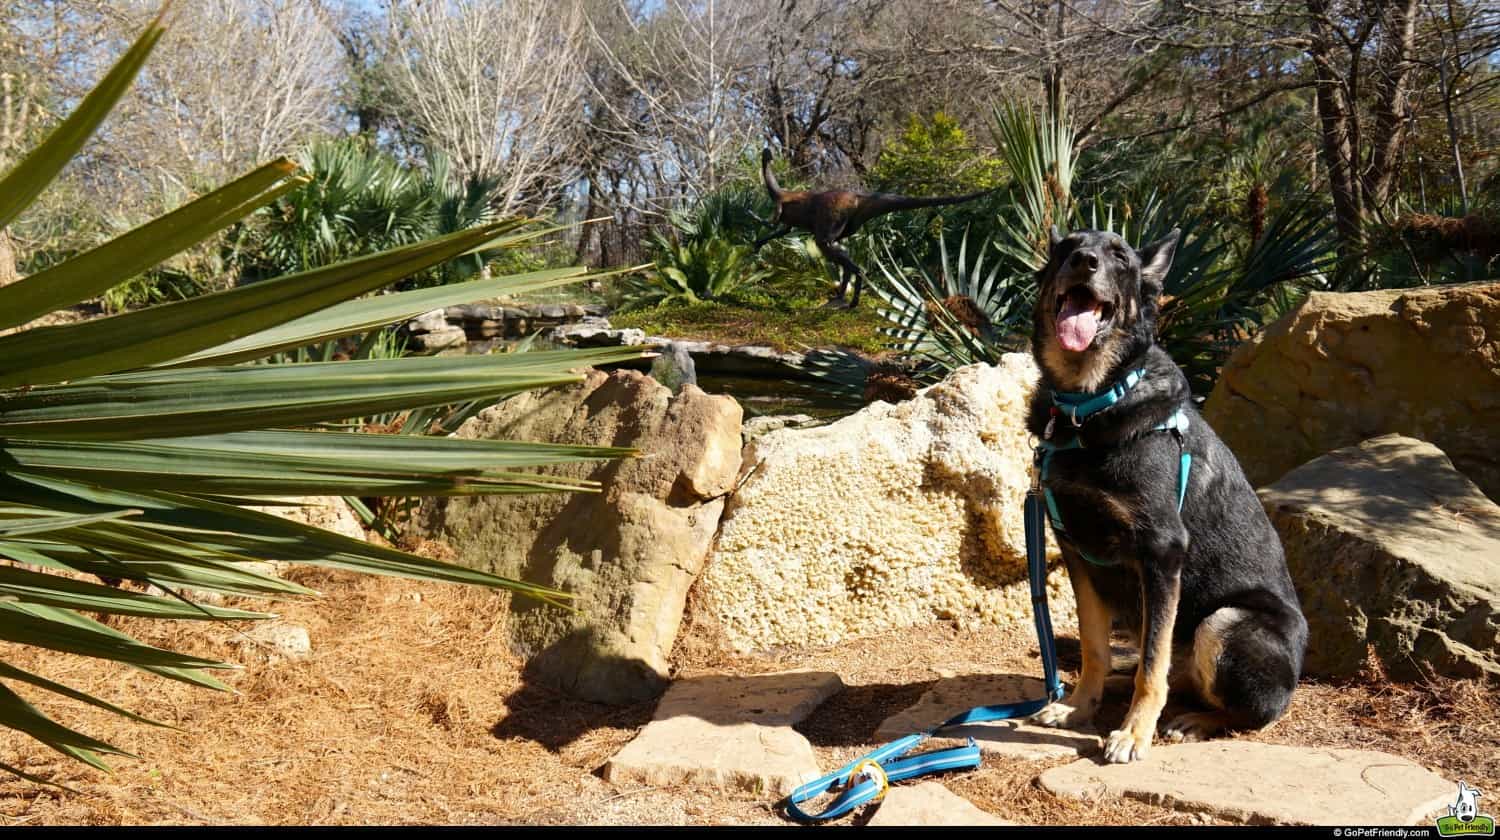 Dog Friendly: Zilker Botanical Garden in Austin